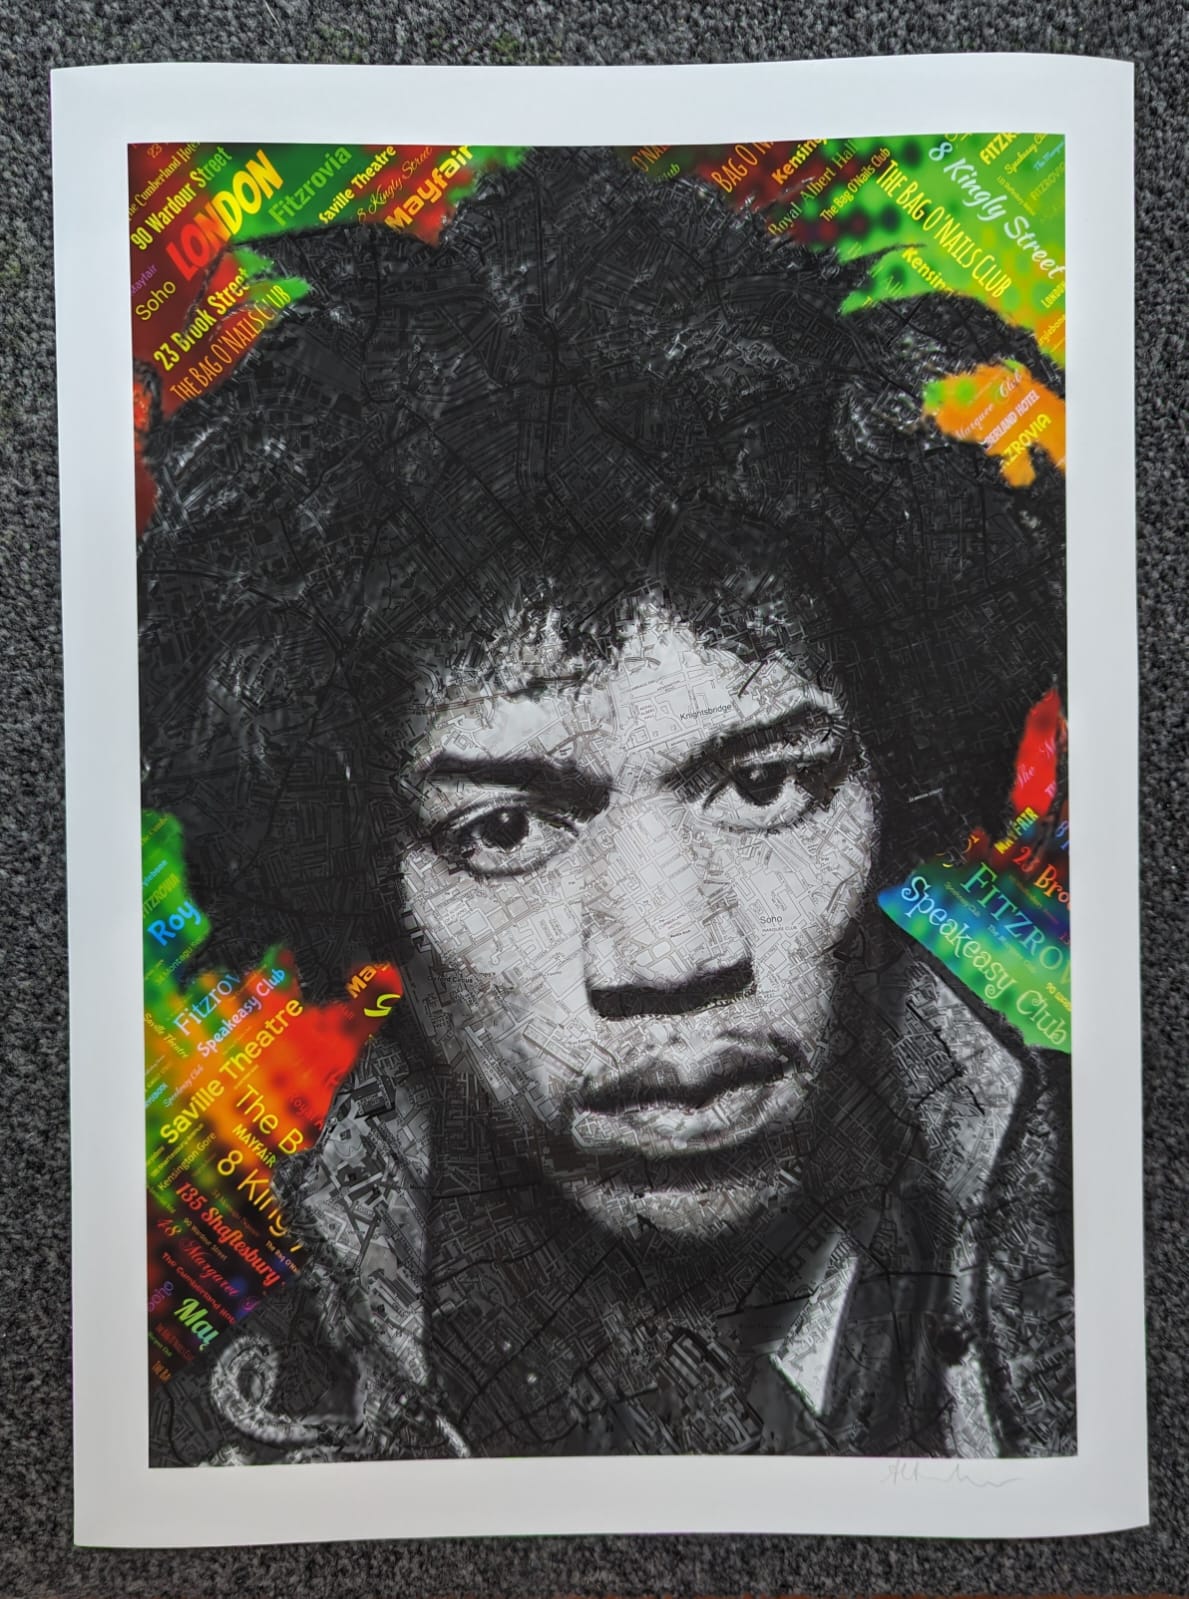 "Jimi Hendrix in London" by Amelia Archer